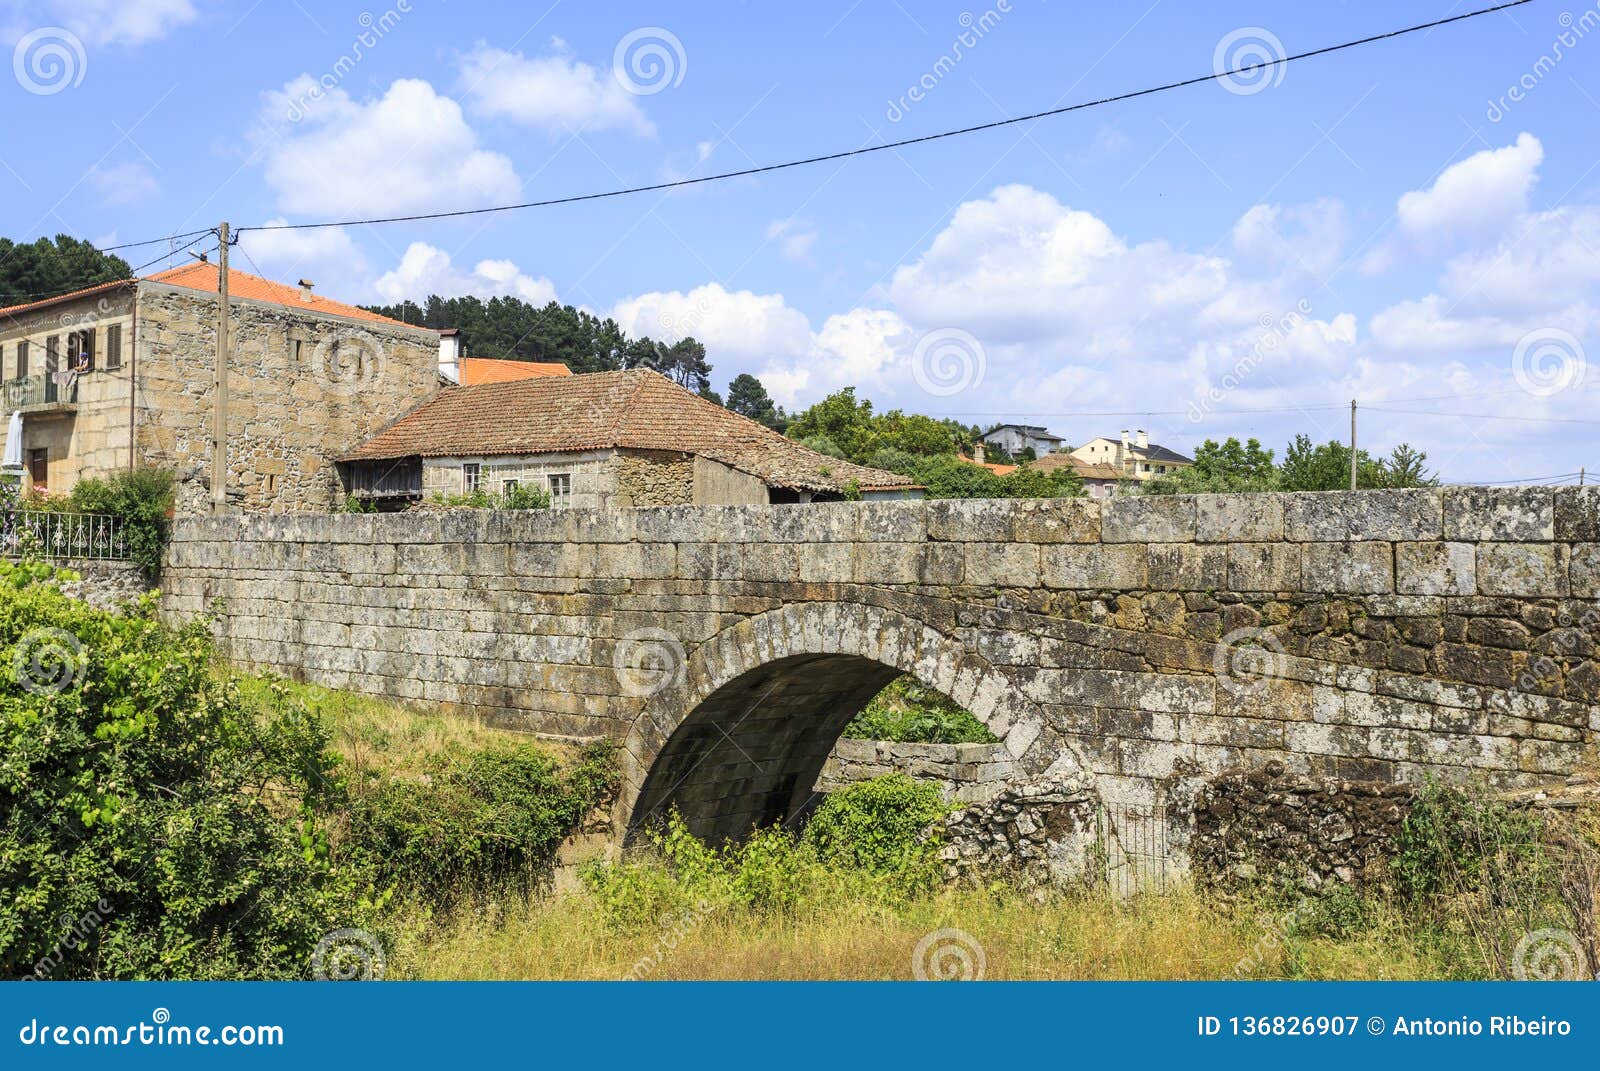 medieval bridge of matanca